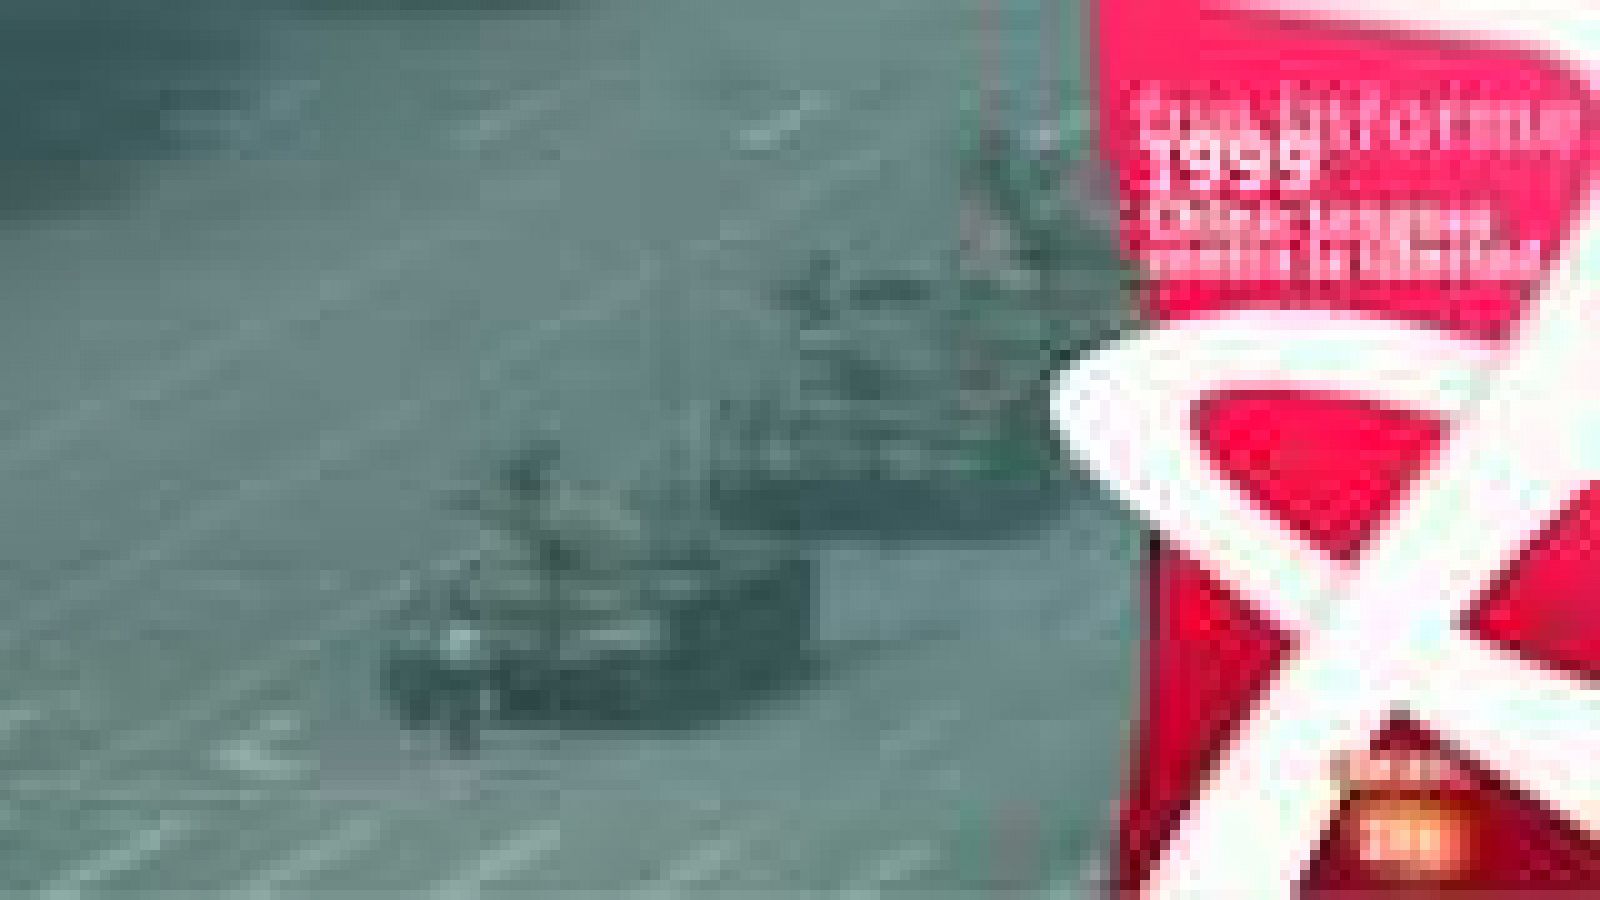  Fue Informe - China, tanques contra la libertad (1989) - Ver ahora